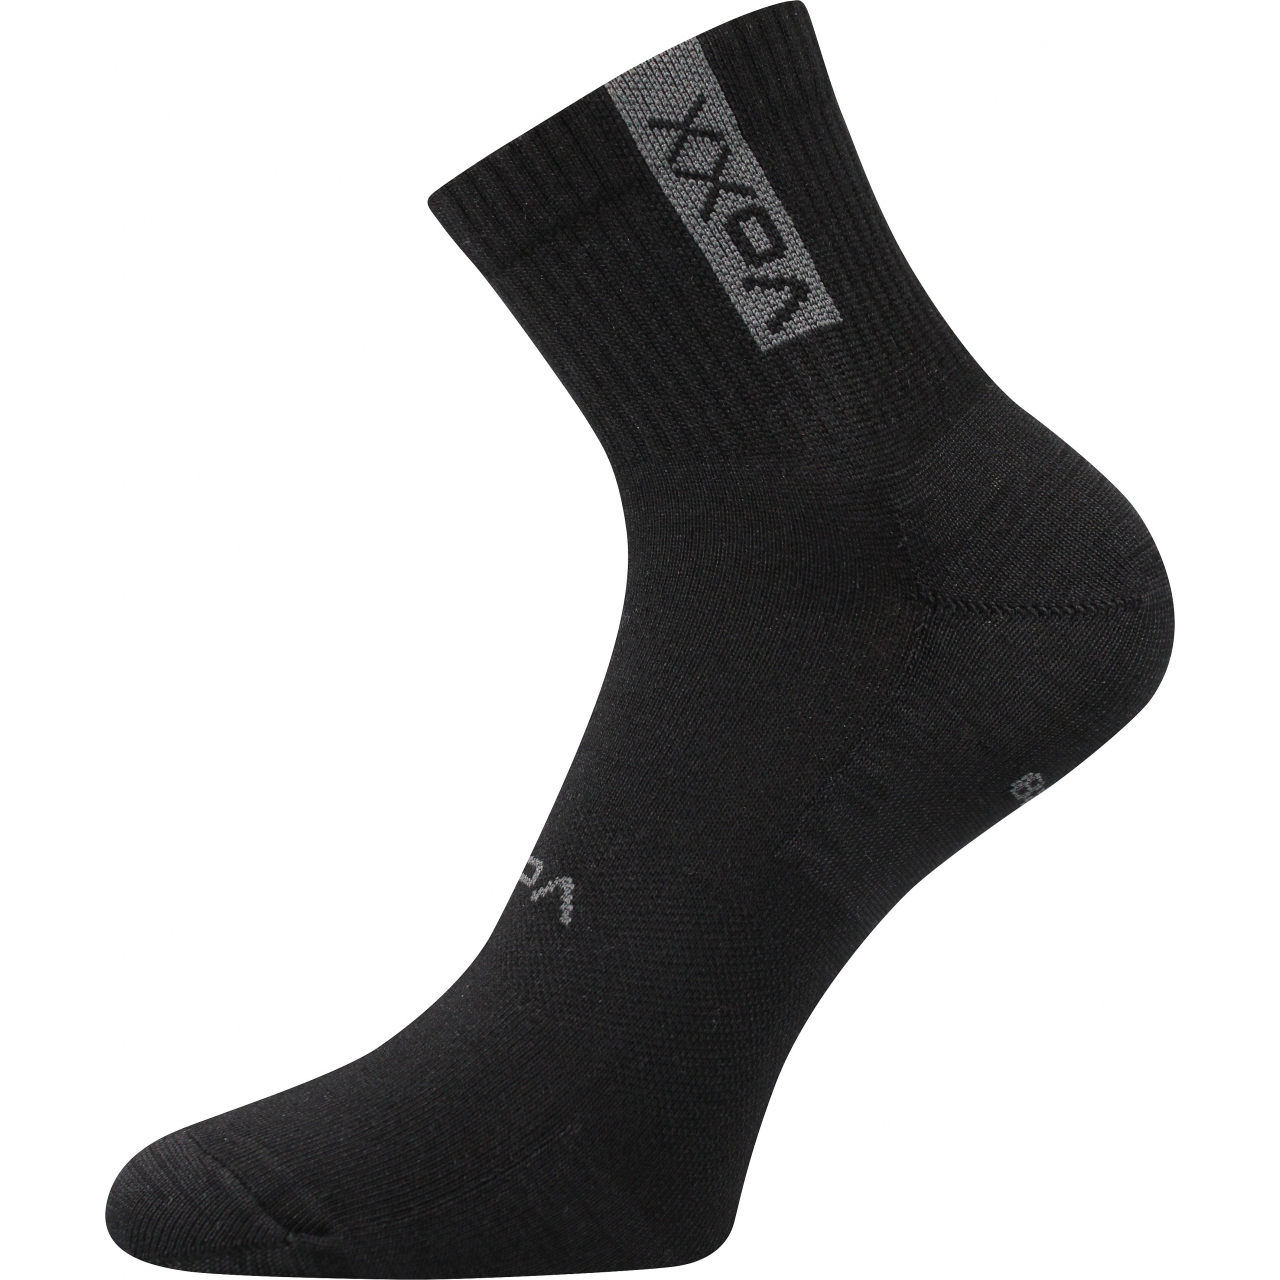 Ponožky sportovní unisex Voxx Brox - černé, 43-46